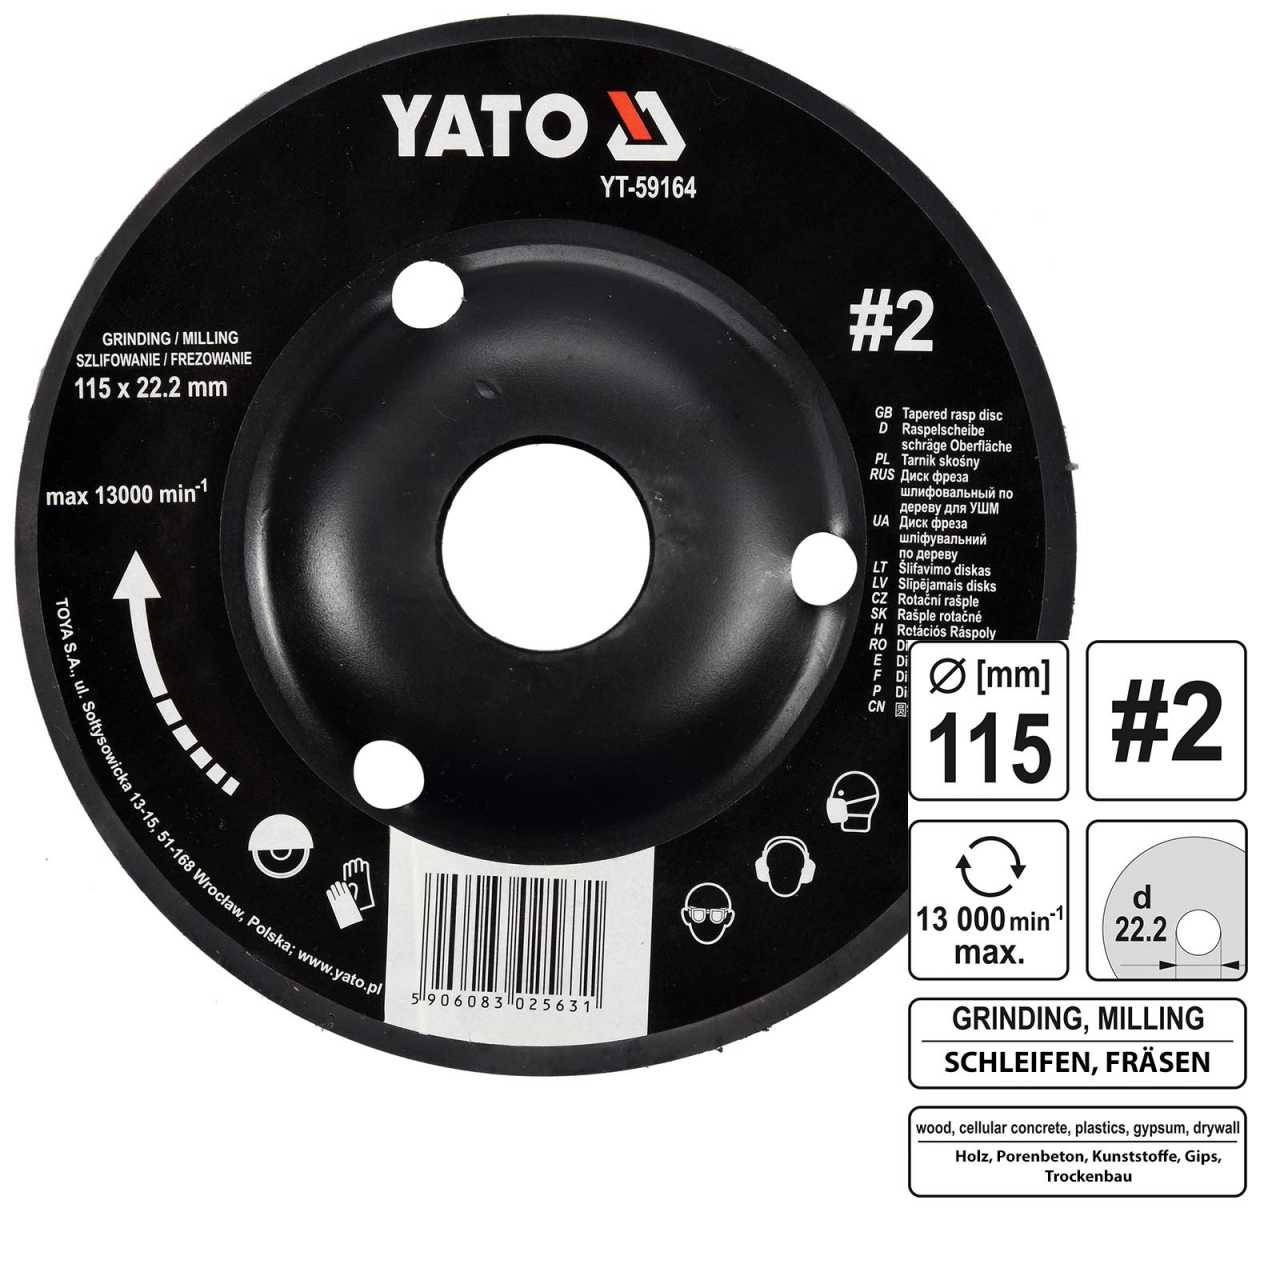 YATO Profi Raspelscheibe für Winkelschleifer 115mm No 2 YT-59164